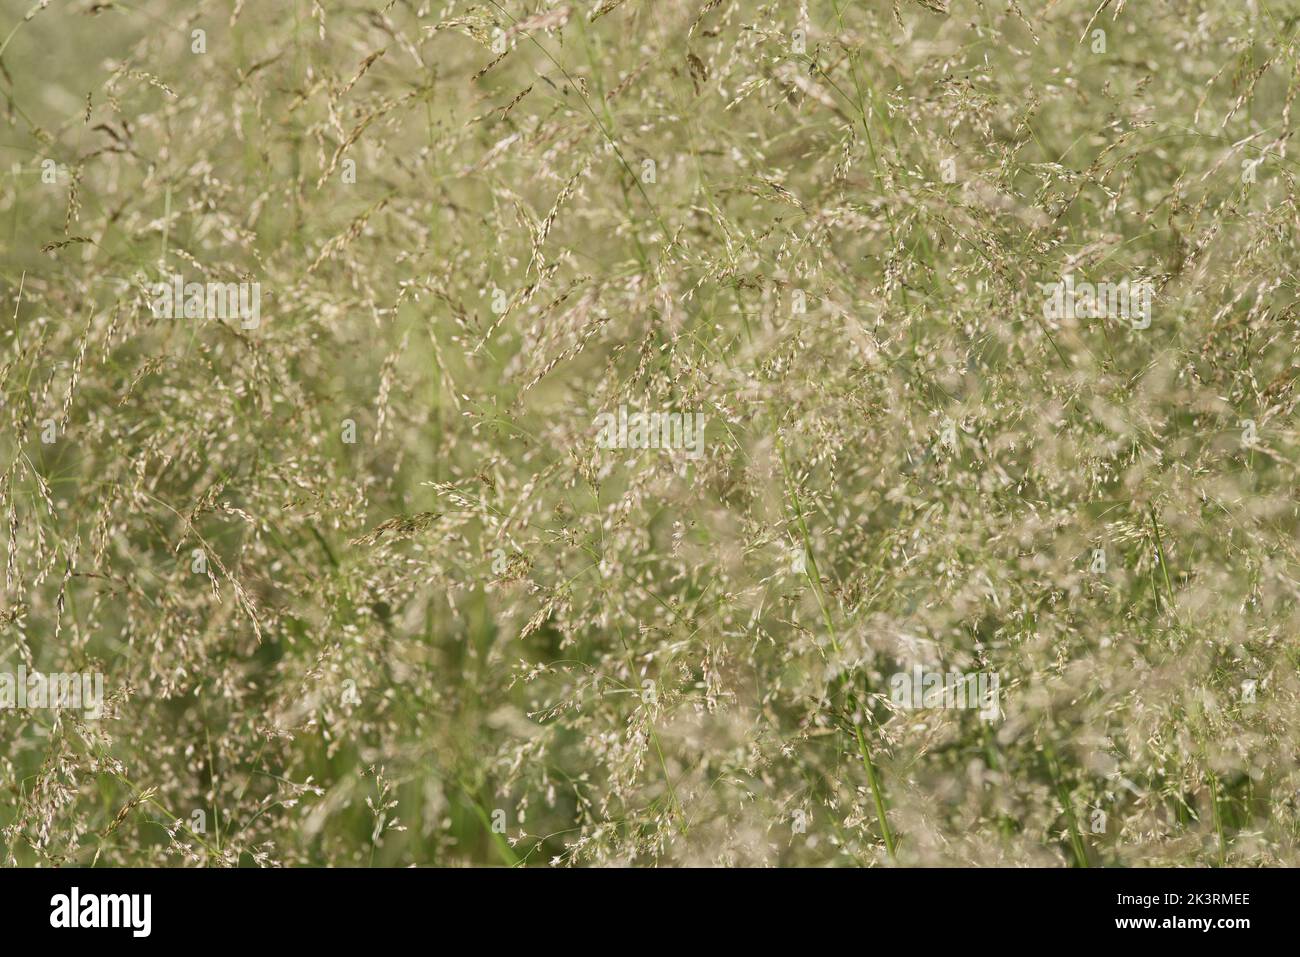 Close up of ornamental grass, heavy with seeds - Deschampsia Cespitosa Goldtau. Stock Photo